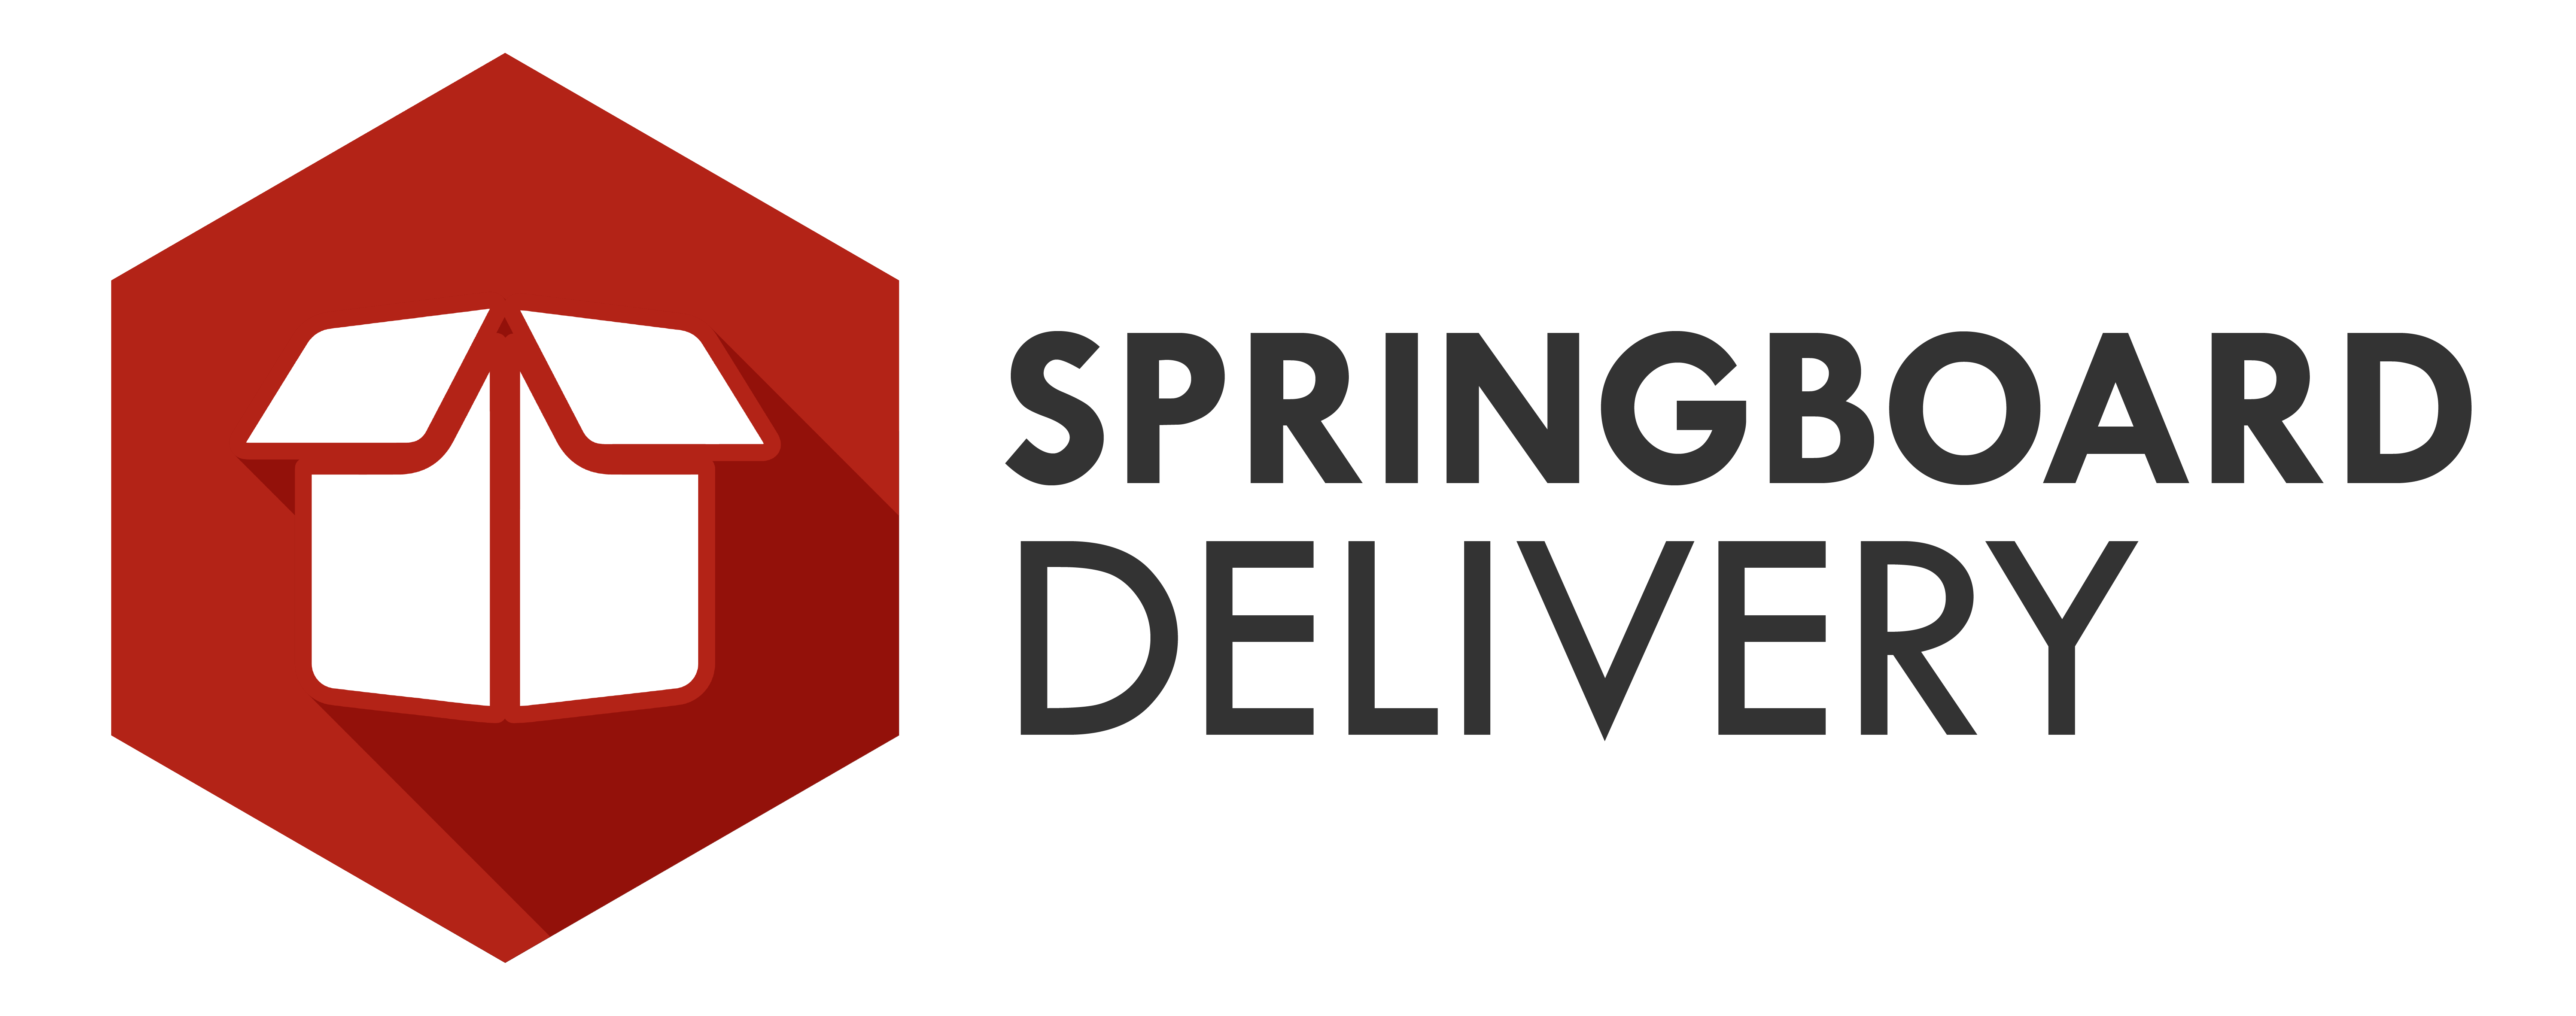 Springboard Logo - Springboard Logo New Delivery - Springboard Applications